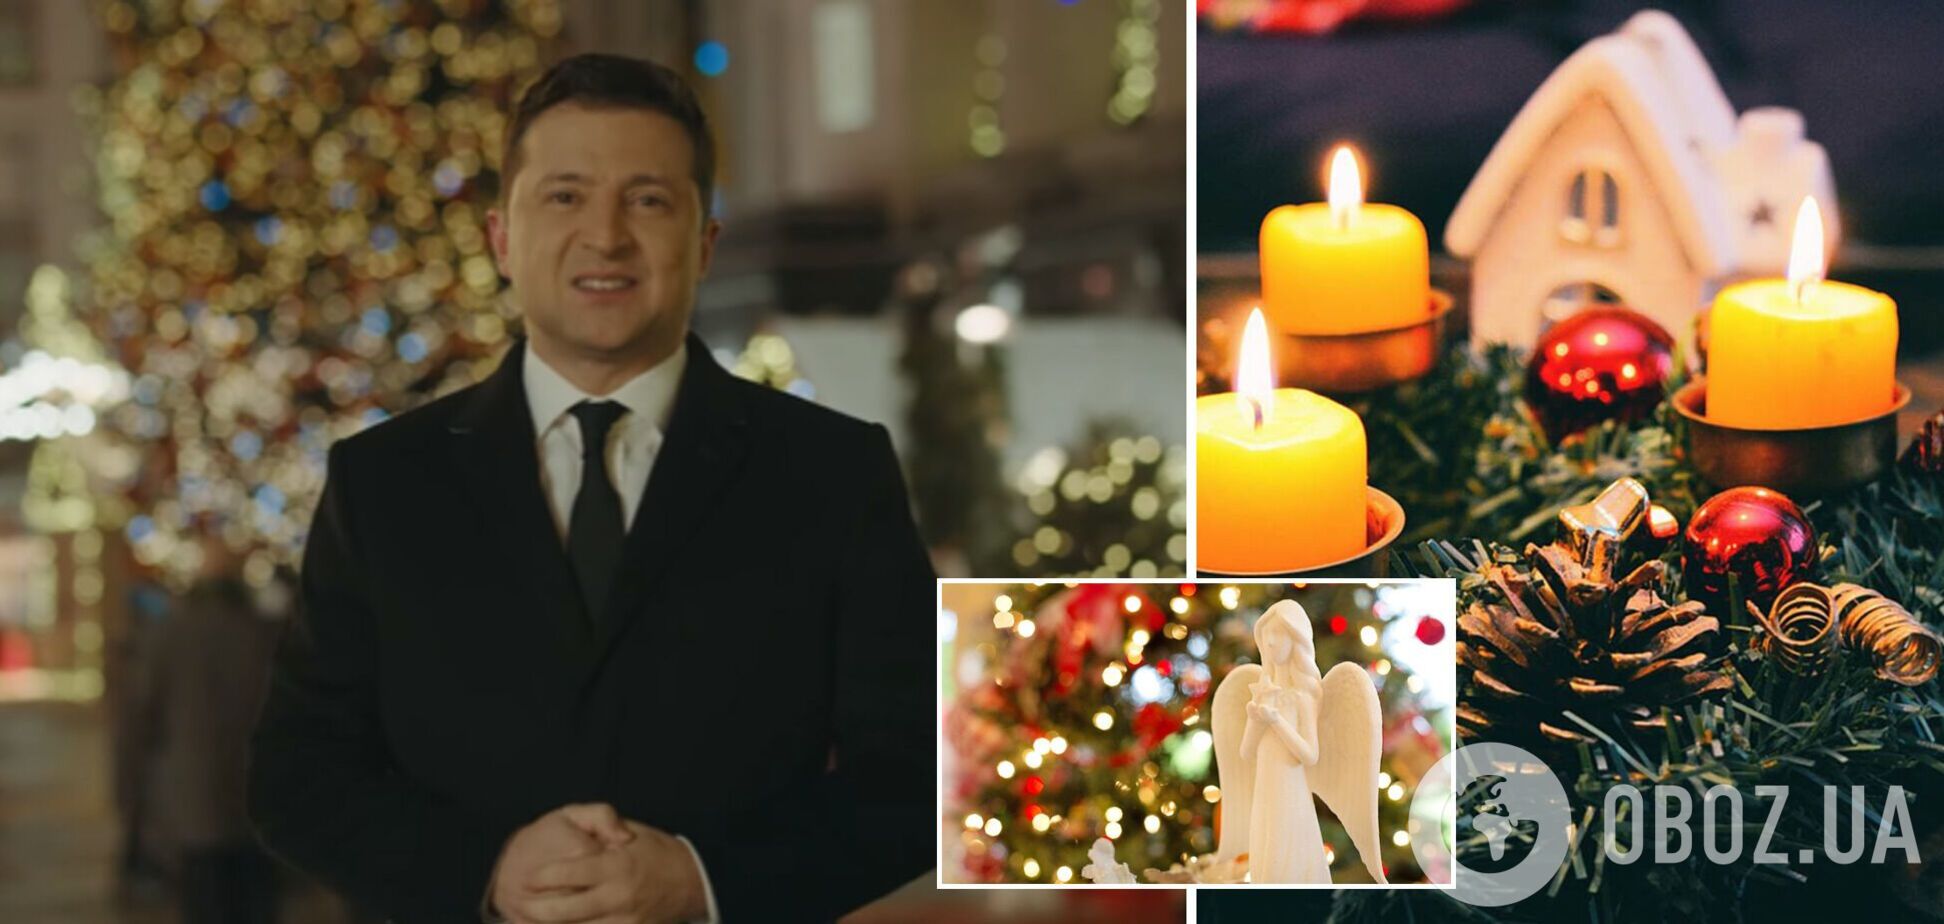 Зеленский словами о примирении поздравил украинцев со Святвечером. Видео